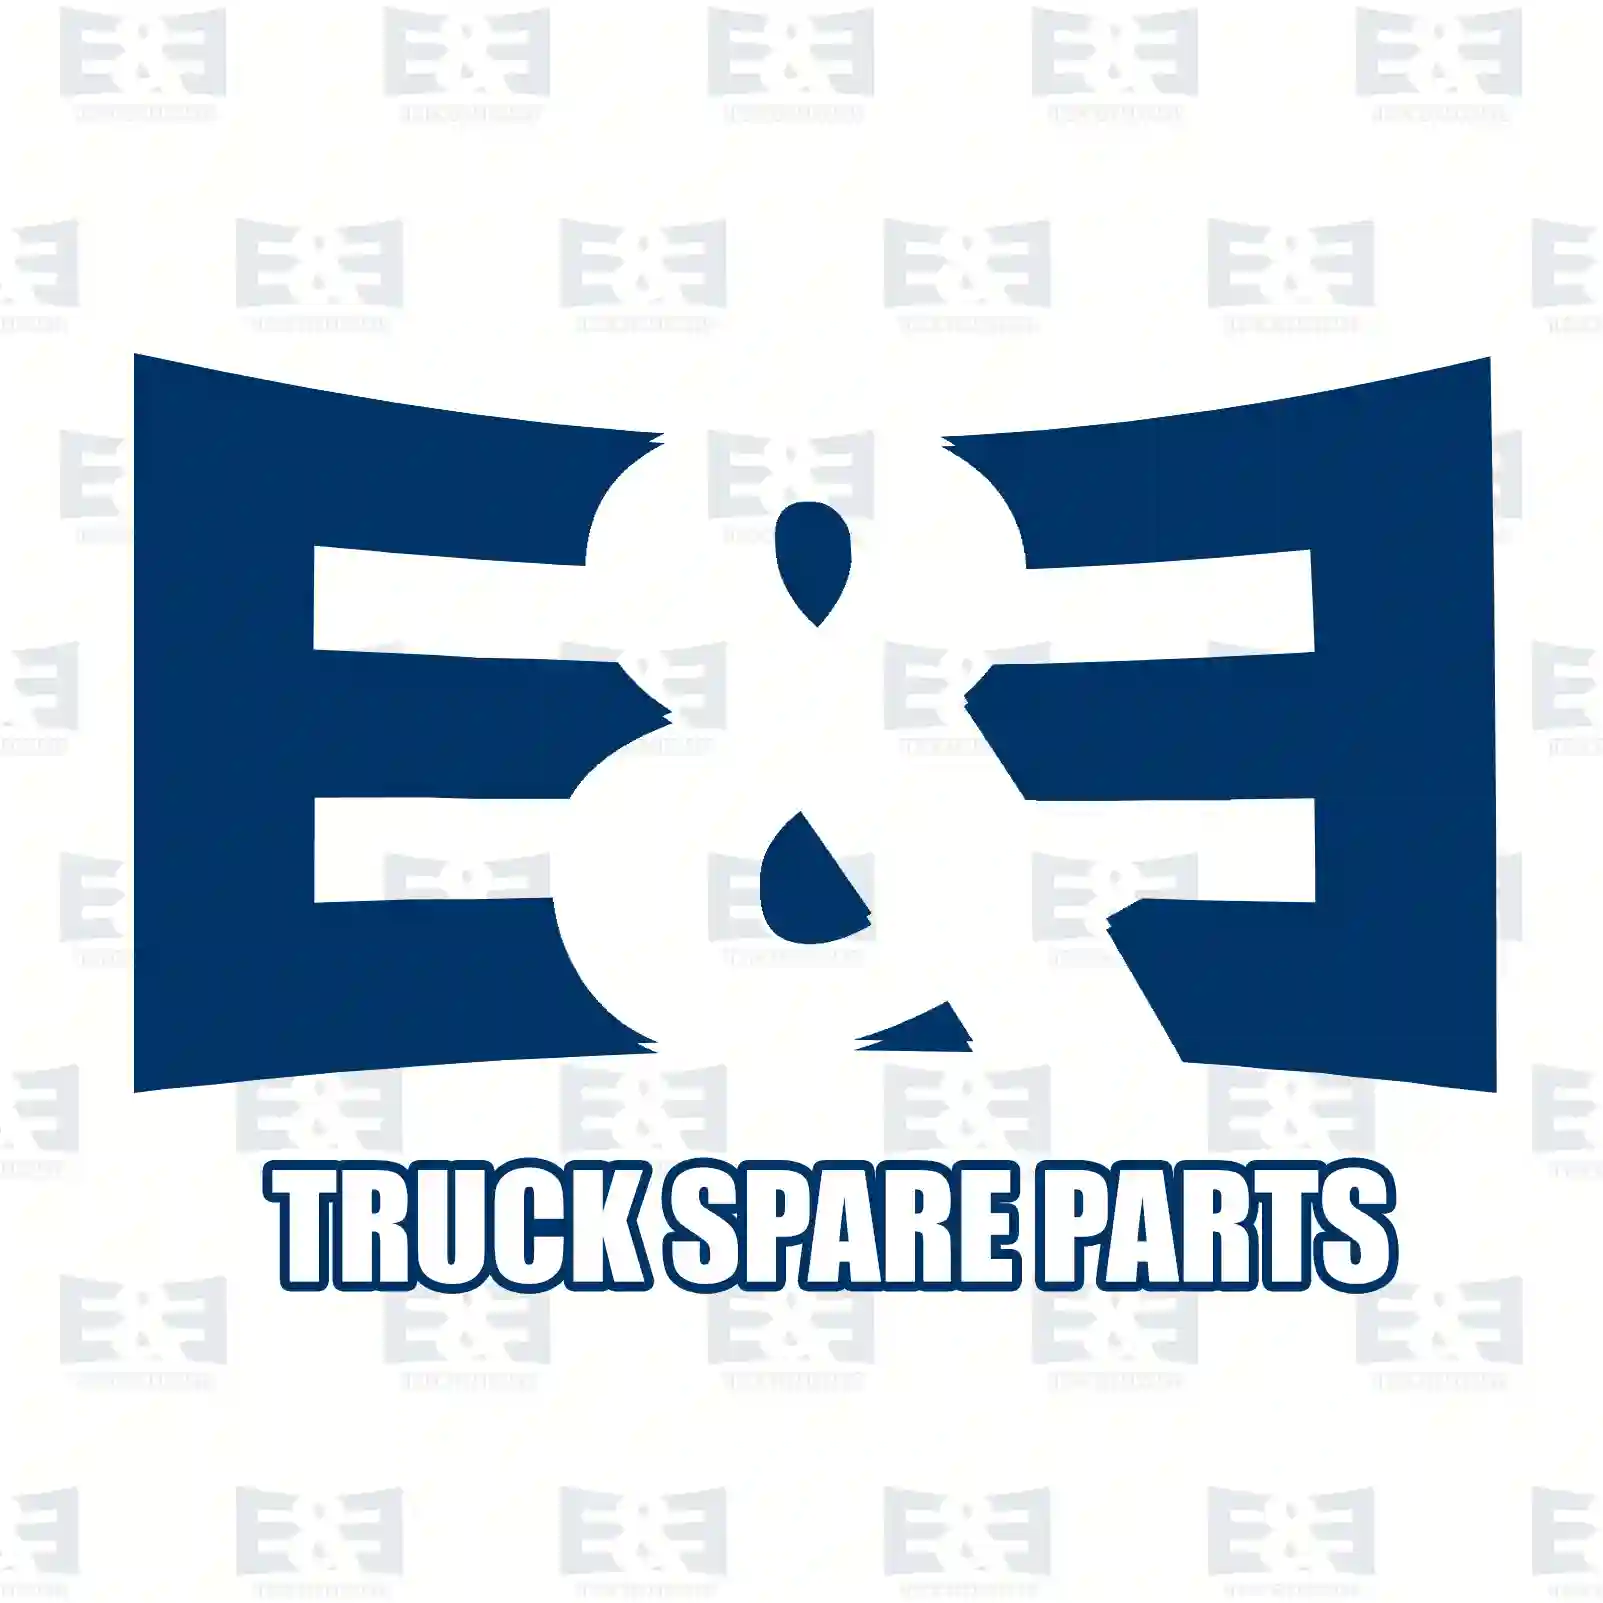 Cabin tilt cylinder, 2E2275678, 5010629264, 5010629265, , , , , , , ||  2E2275678 E&E Truck Spare Parts | Truck Spare Parts, Auotomotive Spare Parts Cabin tilt cylinder, 2E2275678, 5010629264, 5010629265, , , , , , , ||  2E2275678 E&E Truck Spare Parts | Truck Spare Parts, Auotomotive Spare Parts